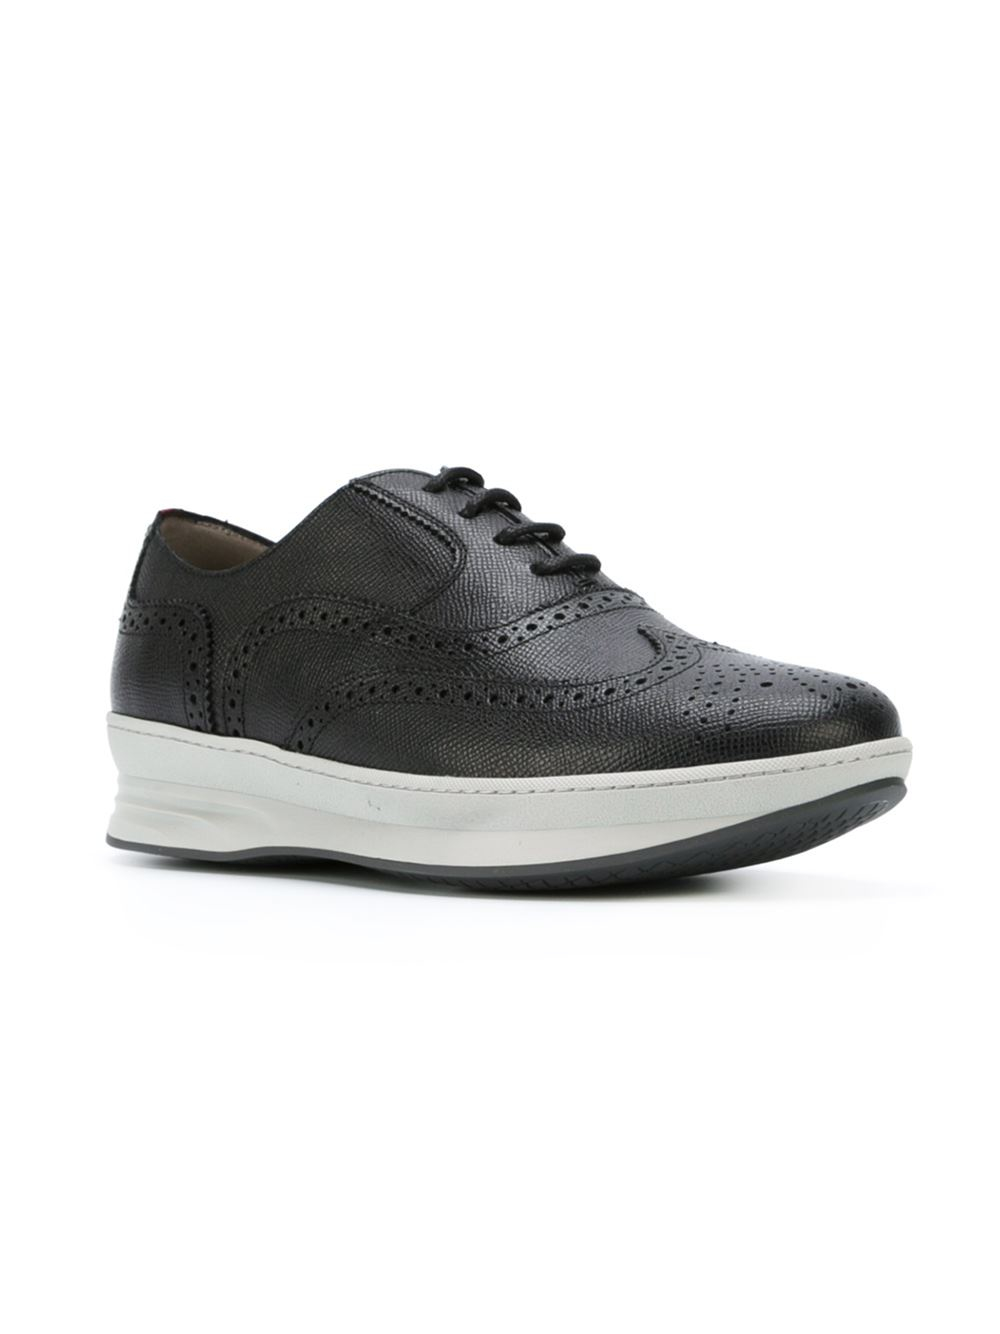 Ferragamo 'Marlow' Sneakers in Black for Men | Lyst